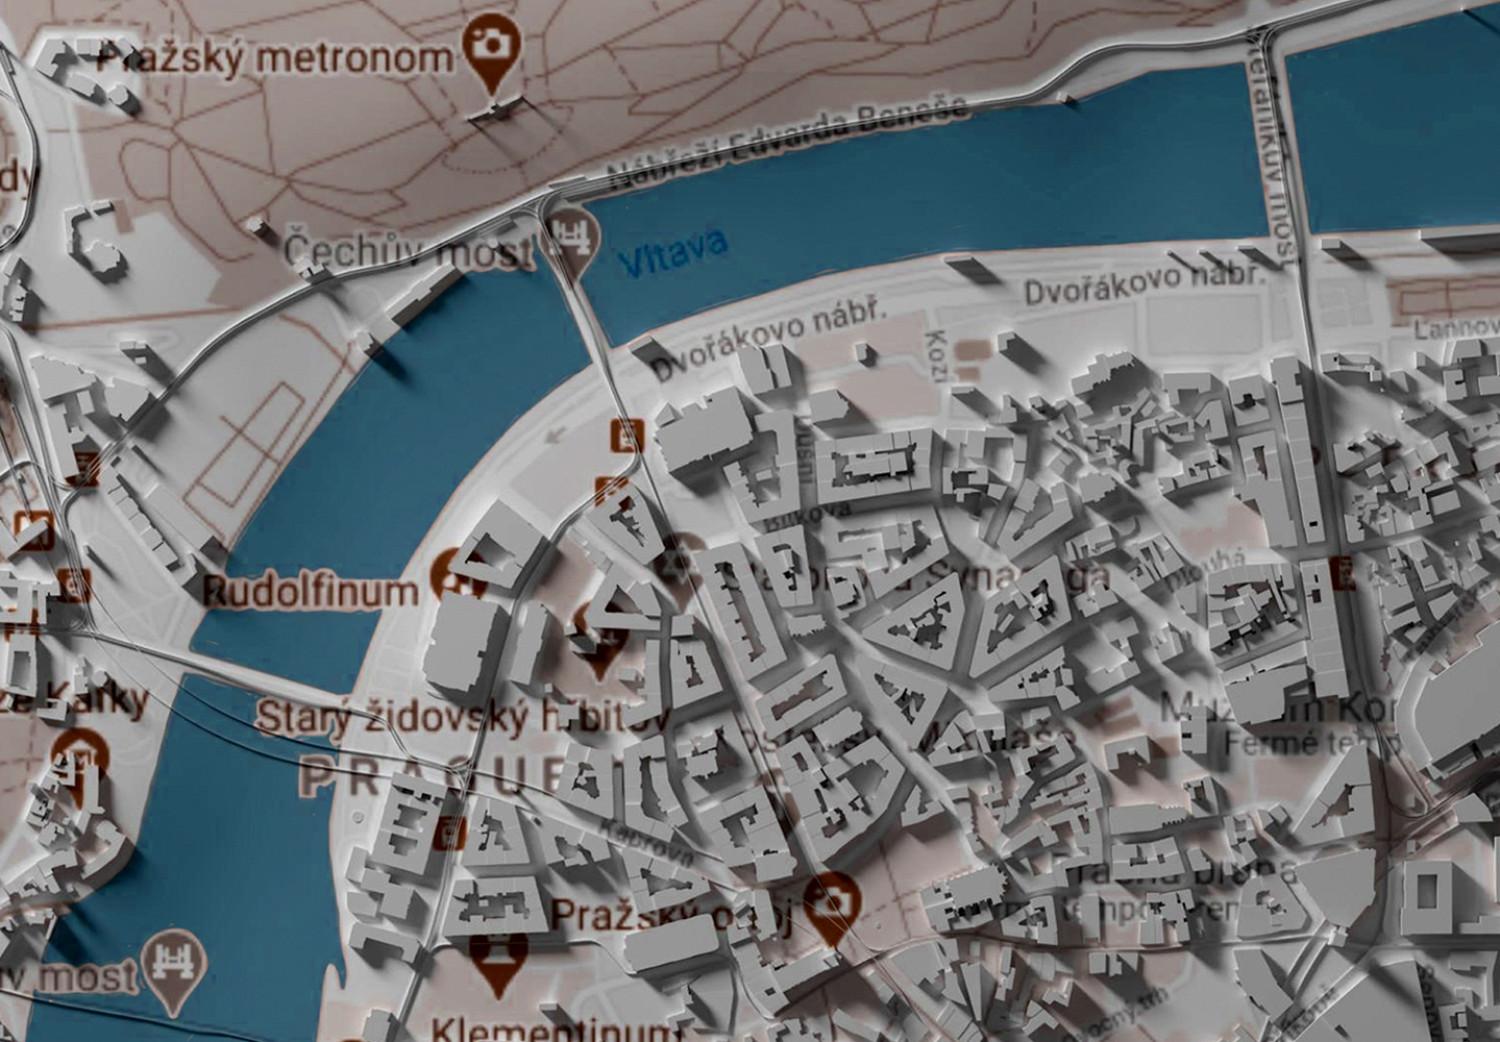 Cuadro moderno Praga 3D - maqueta de Praga con descripción de lugares importantes